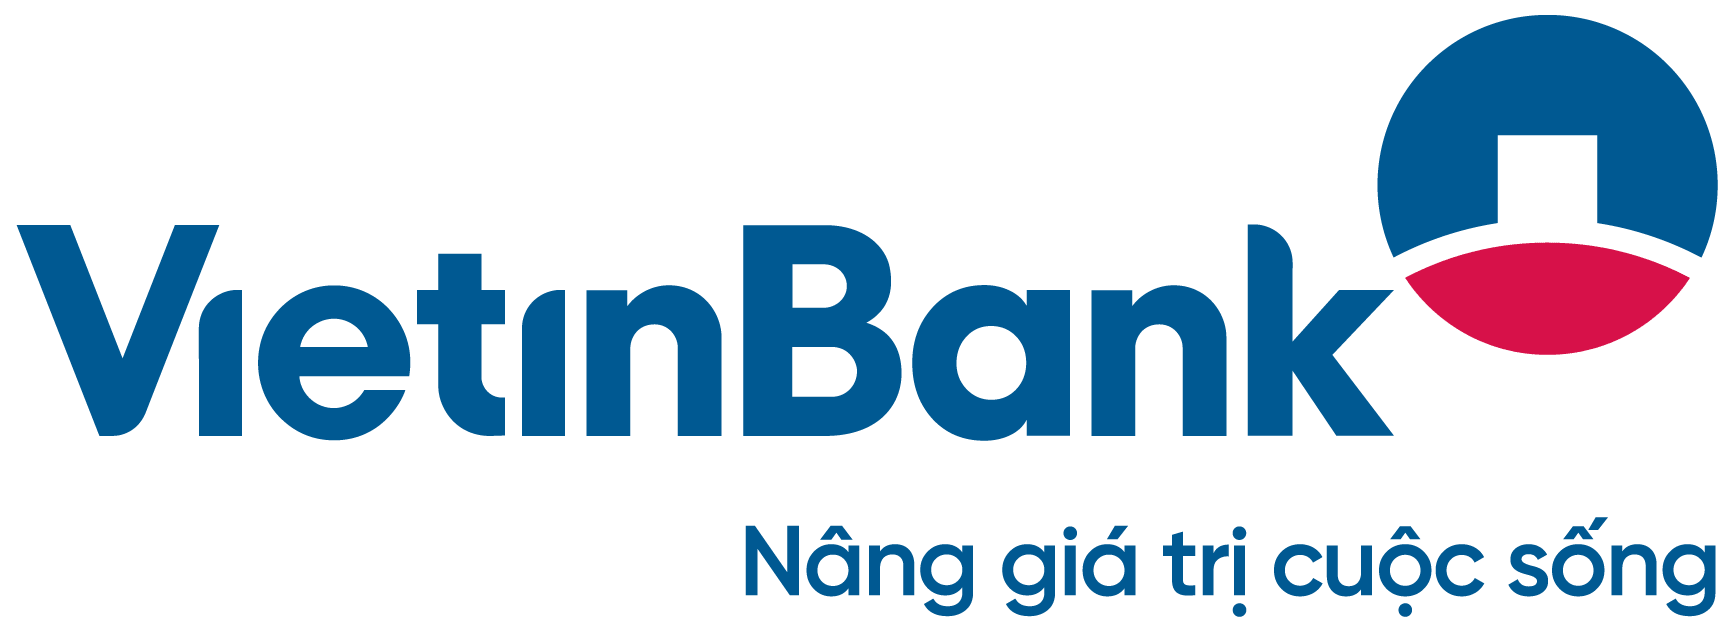 Vietinbank - Big 4 trong ngành ngân hàng